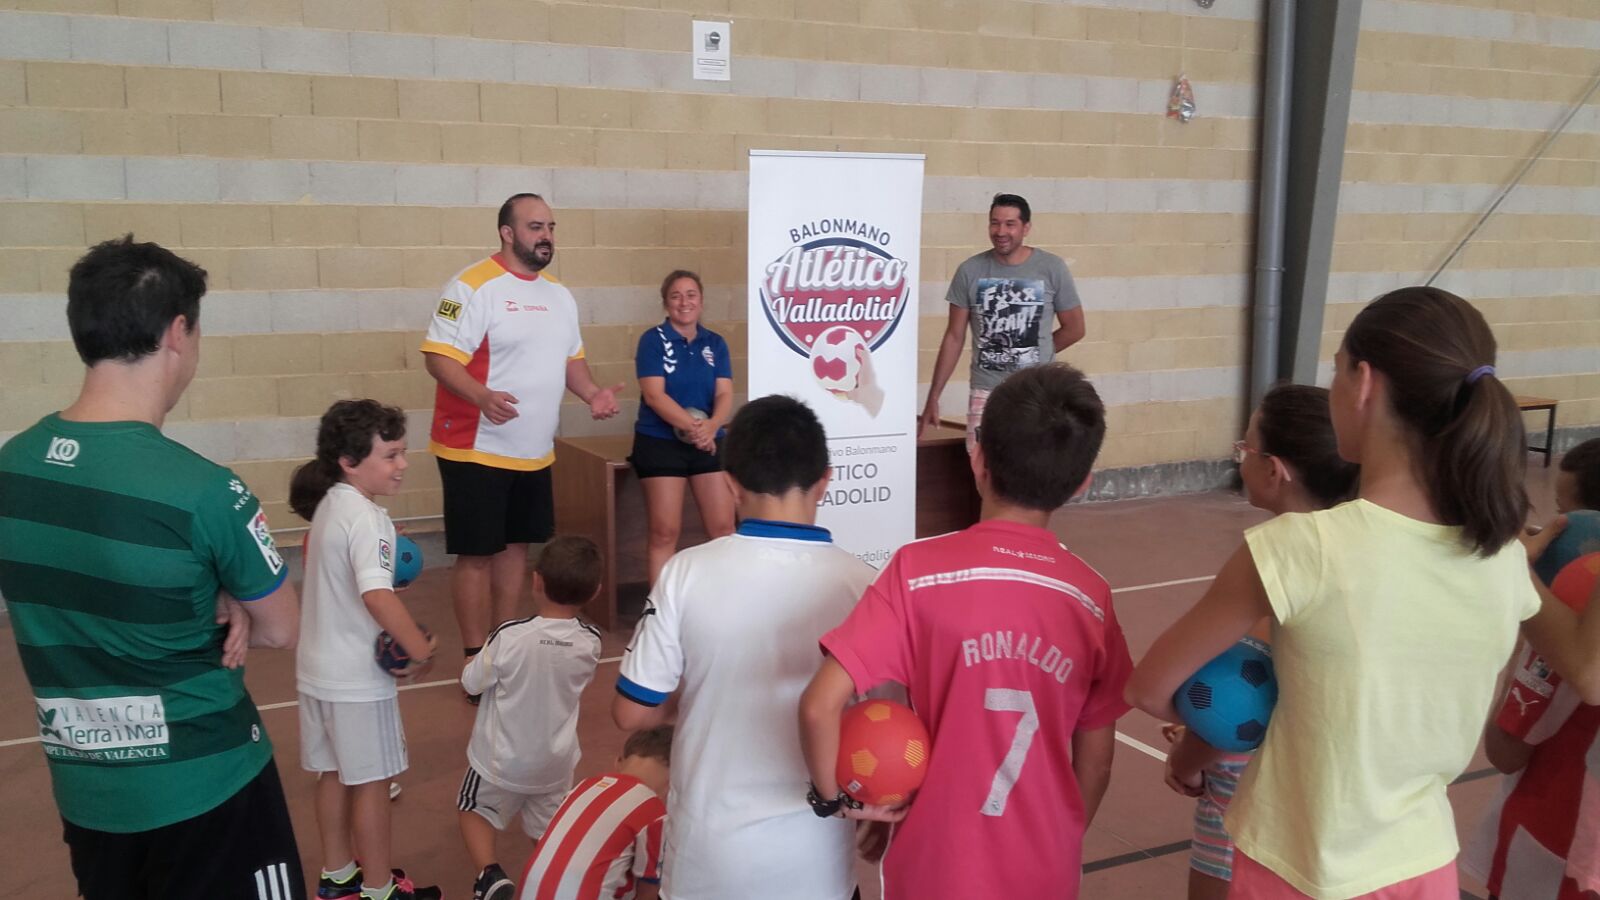 Villabrágima acogió de nuevo la jornada de balonmano del programa A Jugar! del Recoletas Atlético Valladolid | Galería 1 / 3